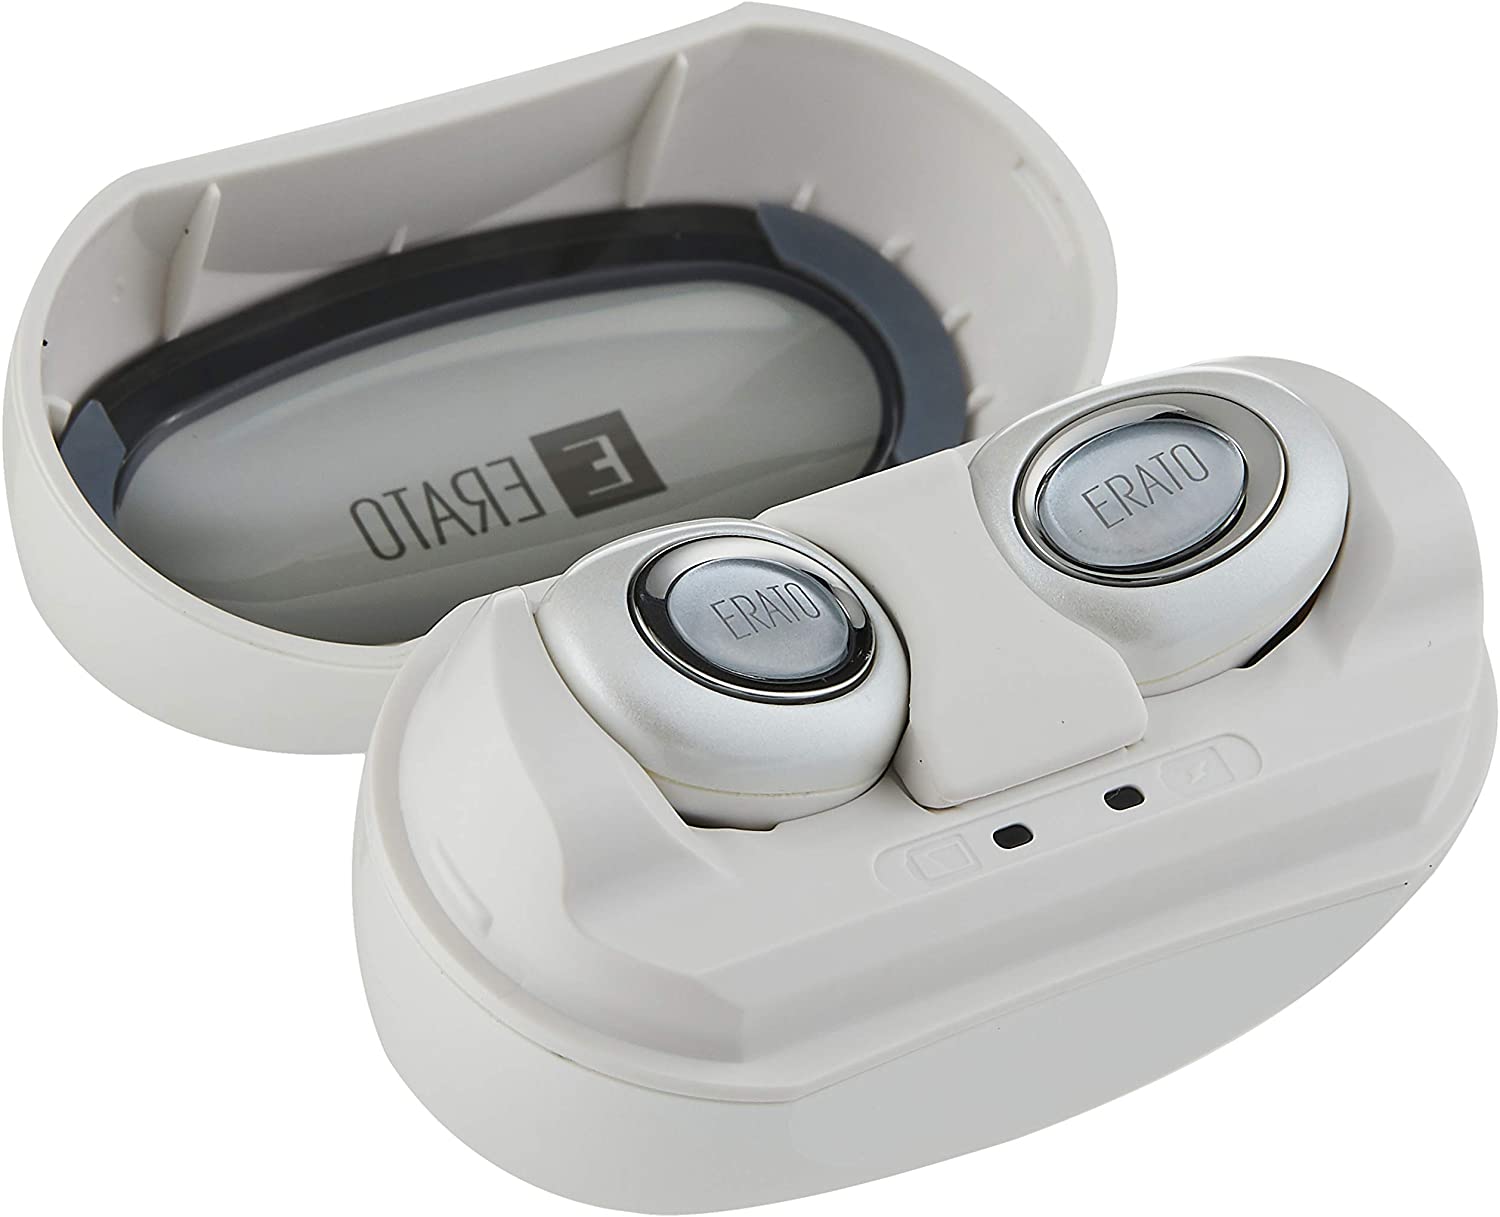 ERATO Muse 5 True Wireless 3D Surround in-Ear Bluetooth Earphones User Manual